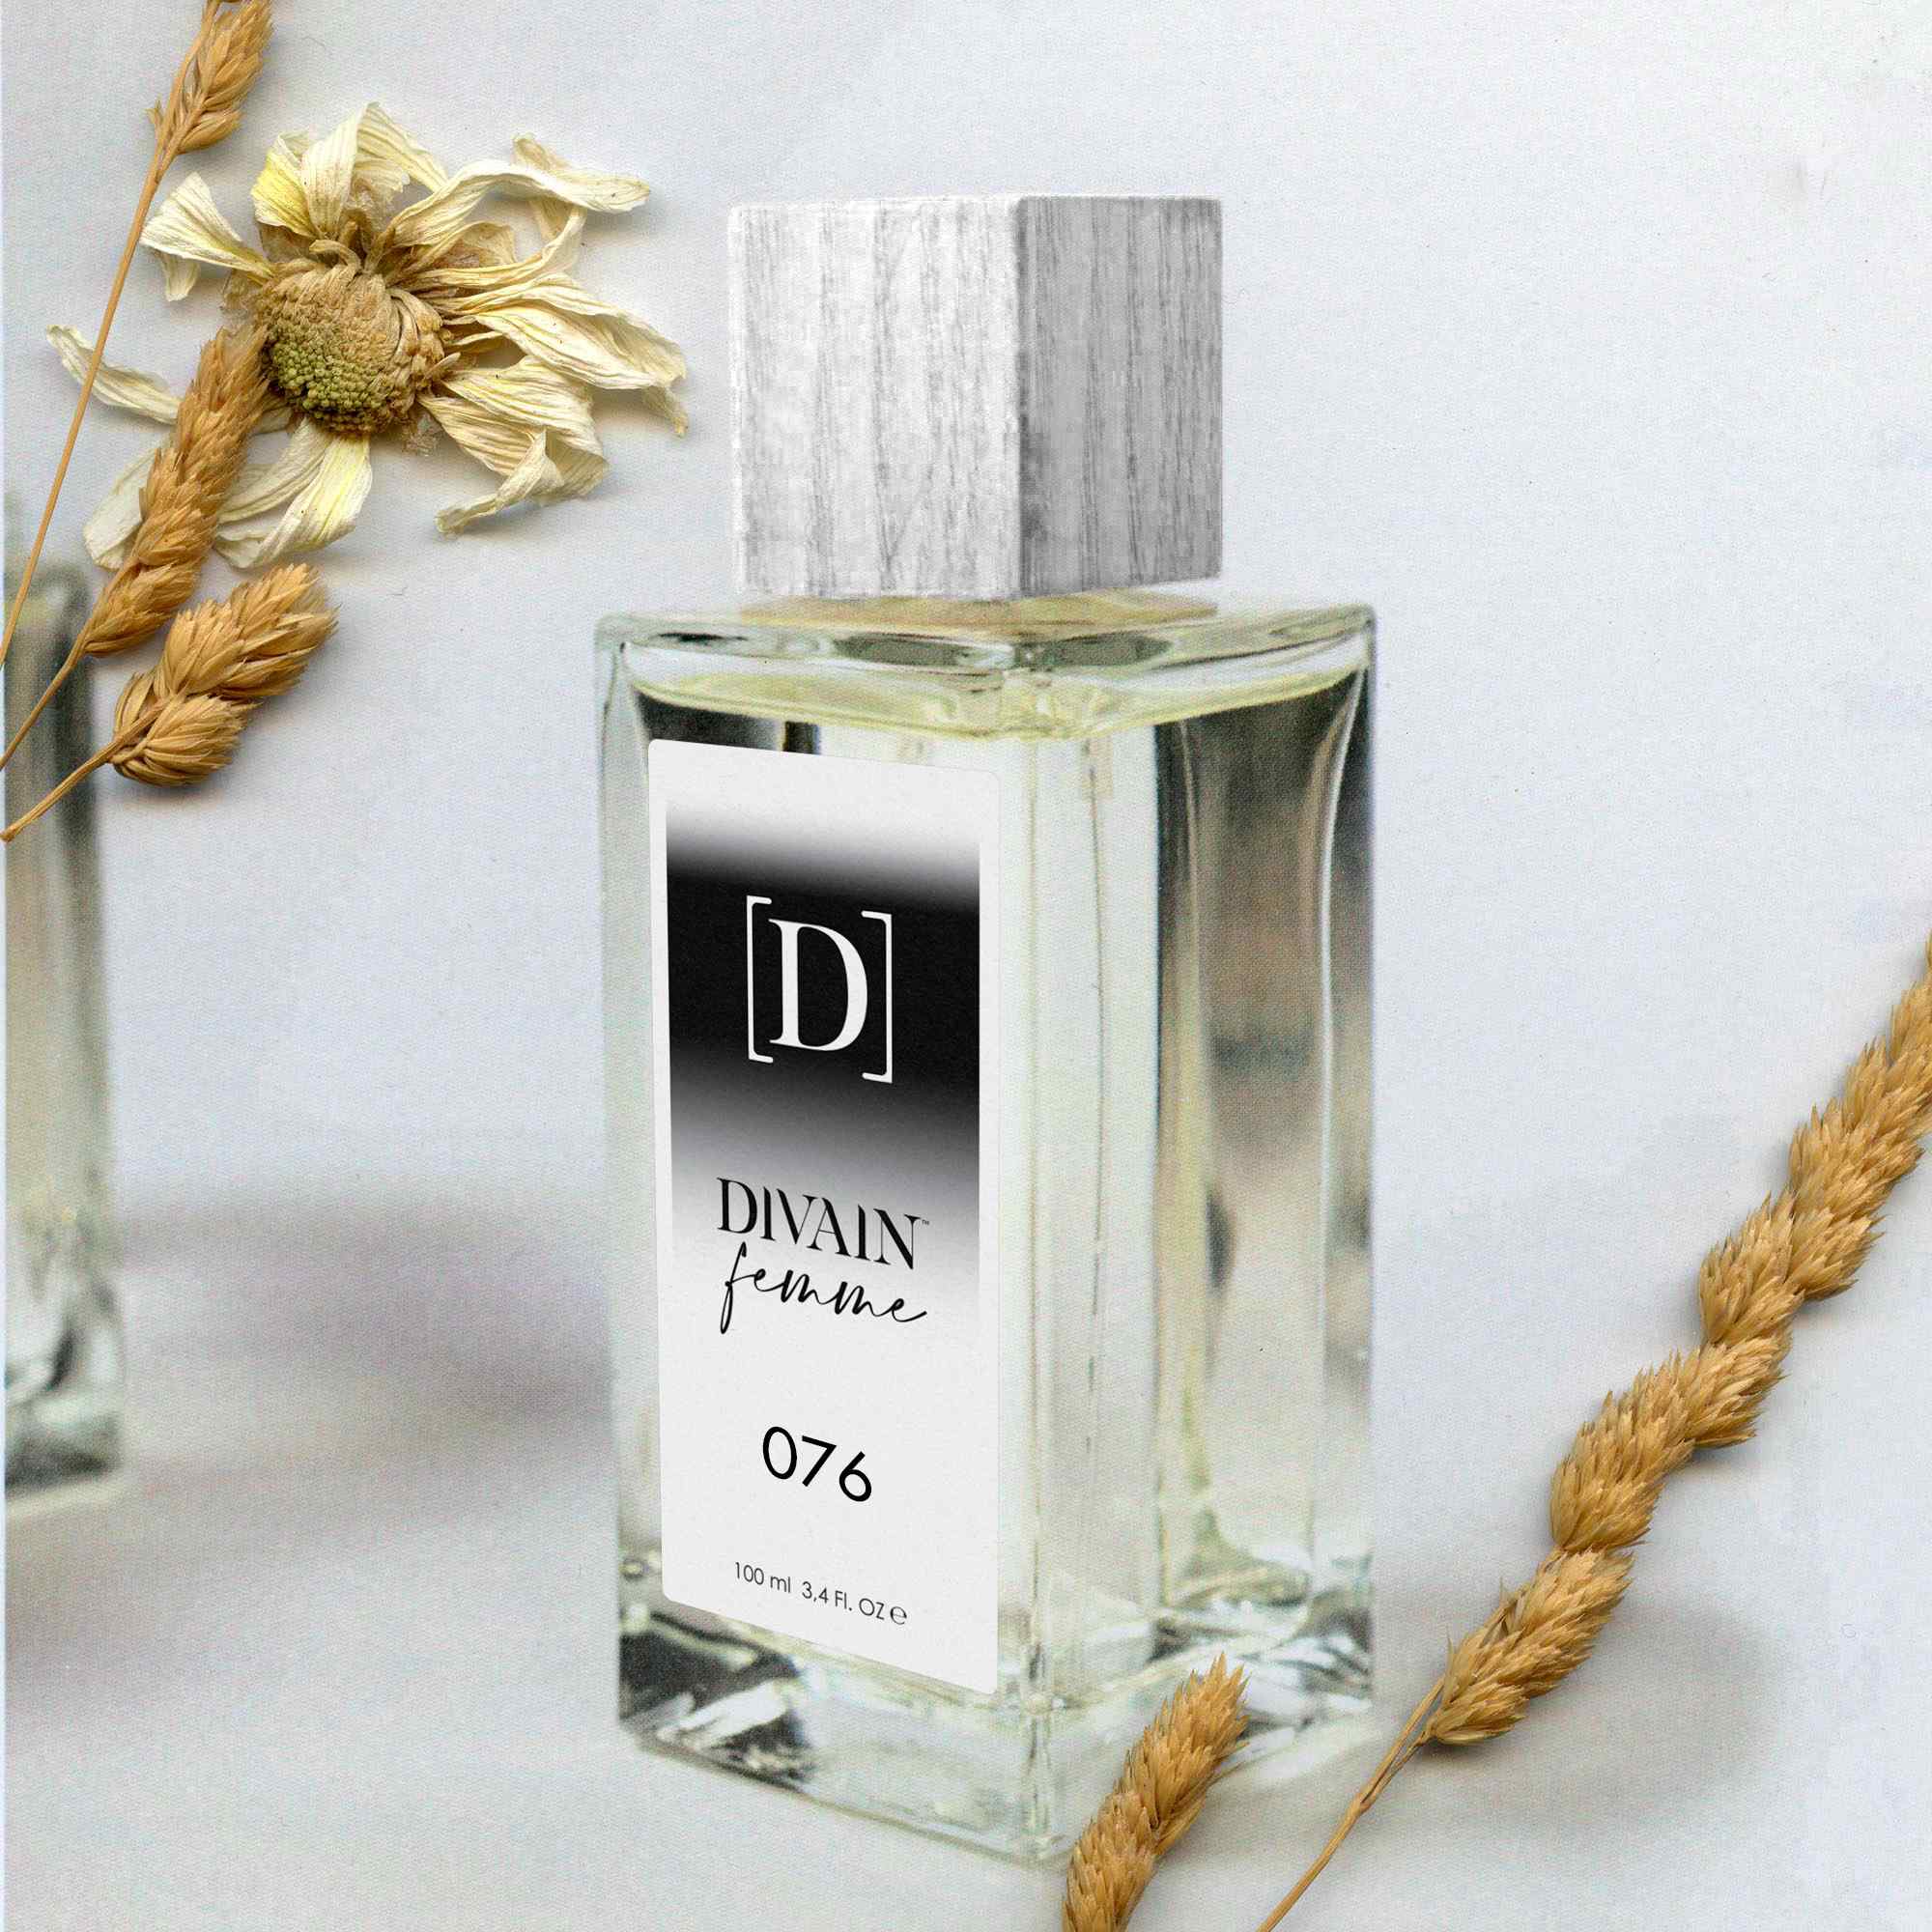 Características de perfumes que recuerdan a Miss Dior